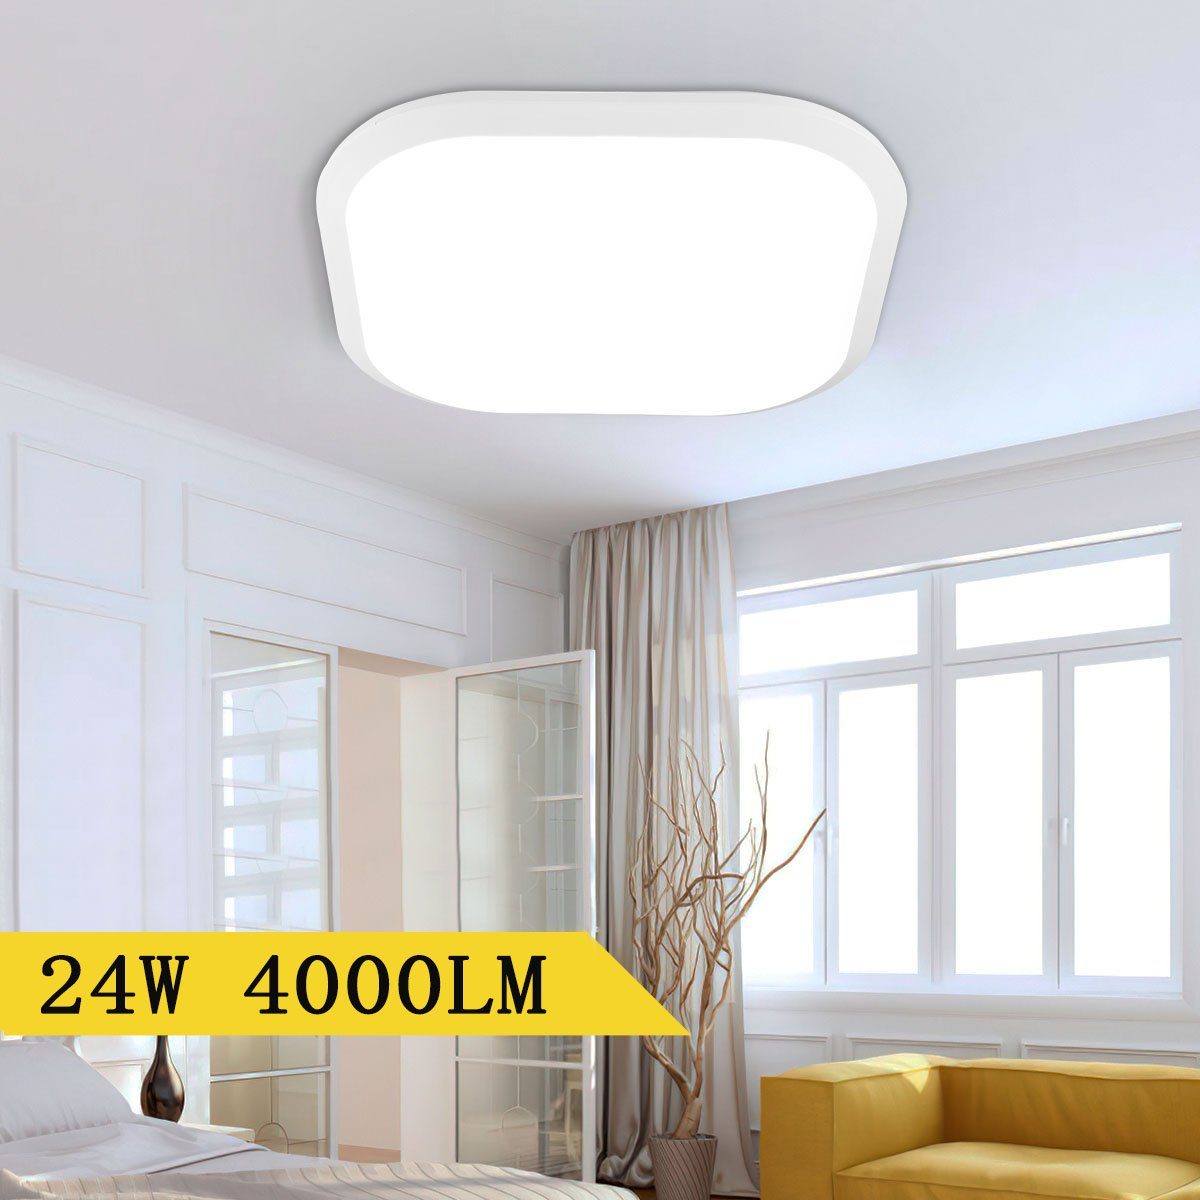 oyajia Deckenleuchte 24W LED Deckenleuchte, Moderne Quadrat Deckenlampe, IP54 Wasserfest, LED fest integriert, ideal für Bad Schlafzimmer Küche Wohnzimmer